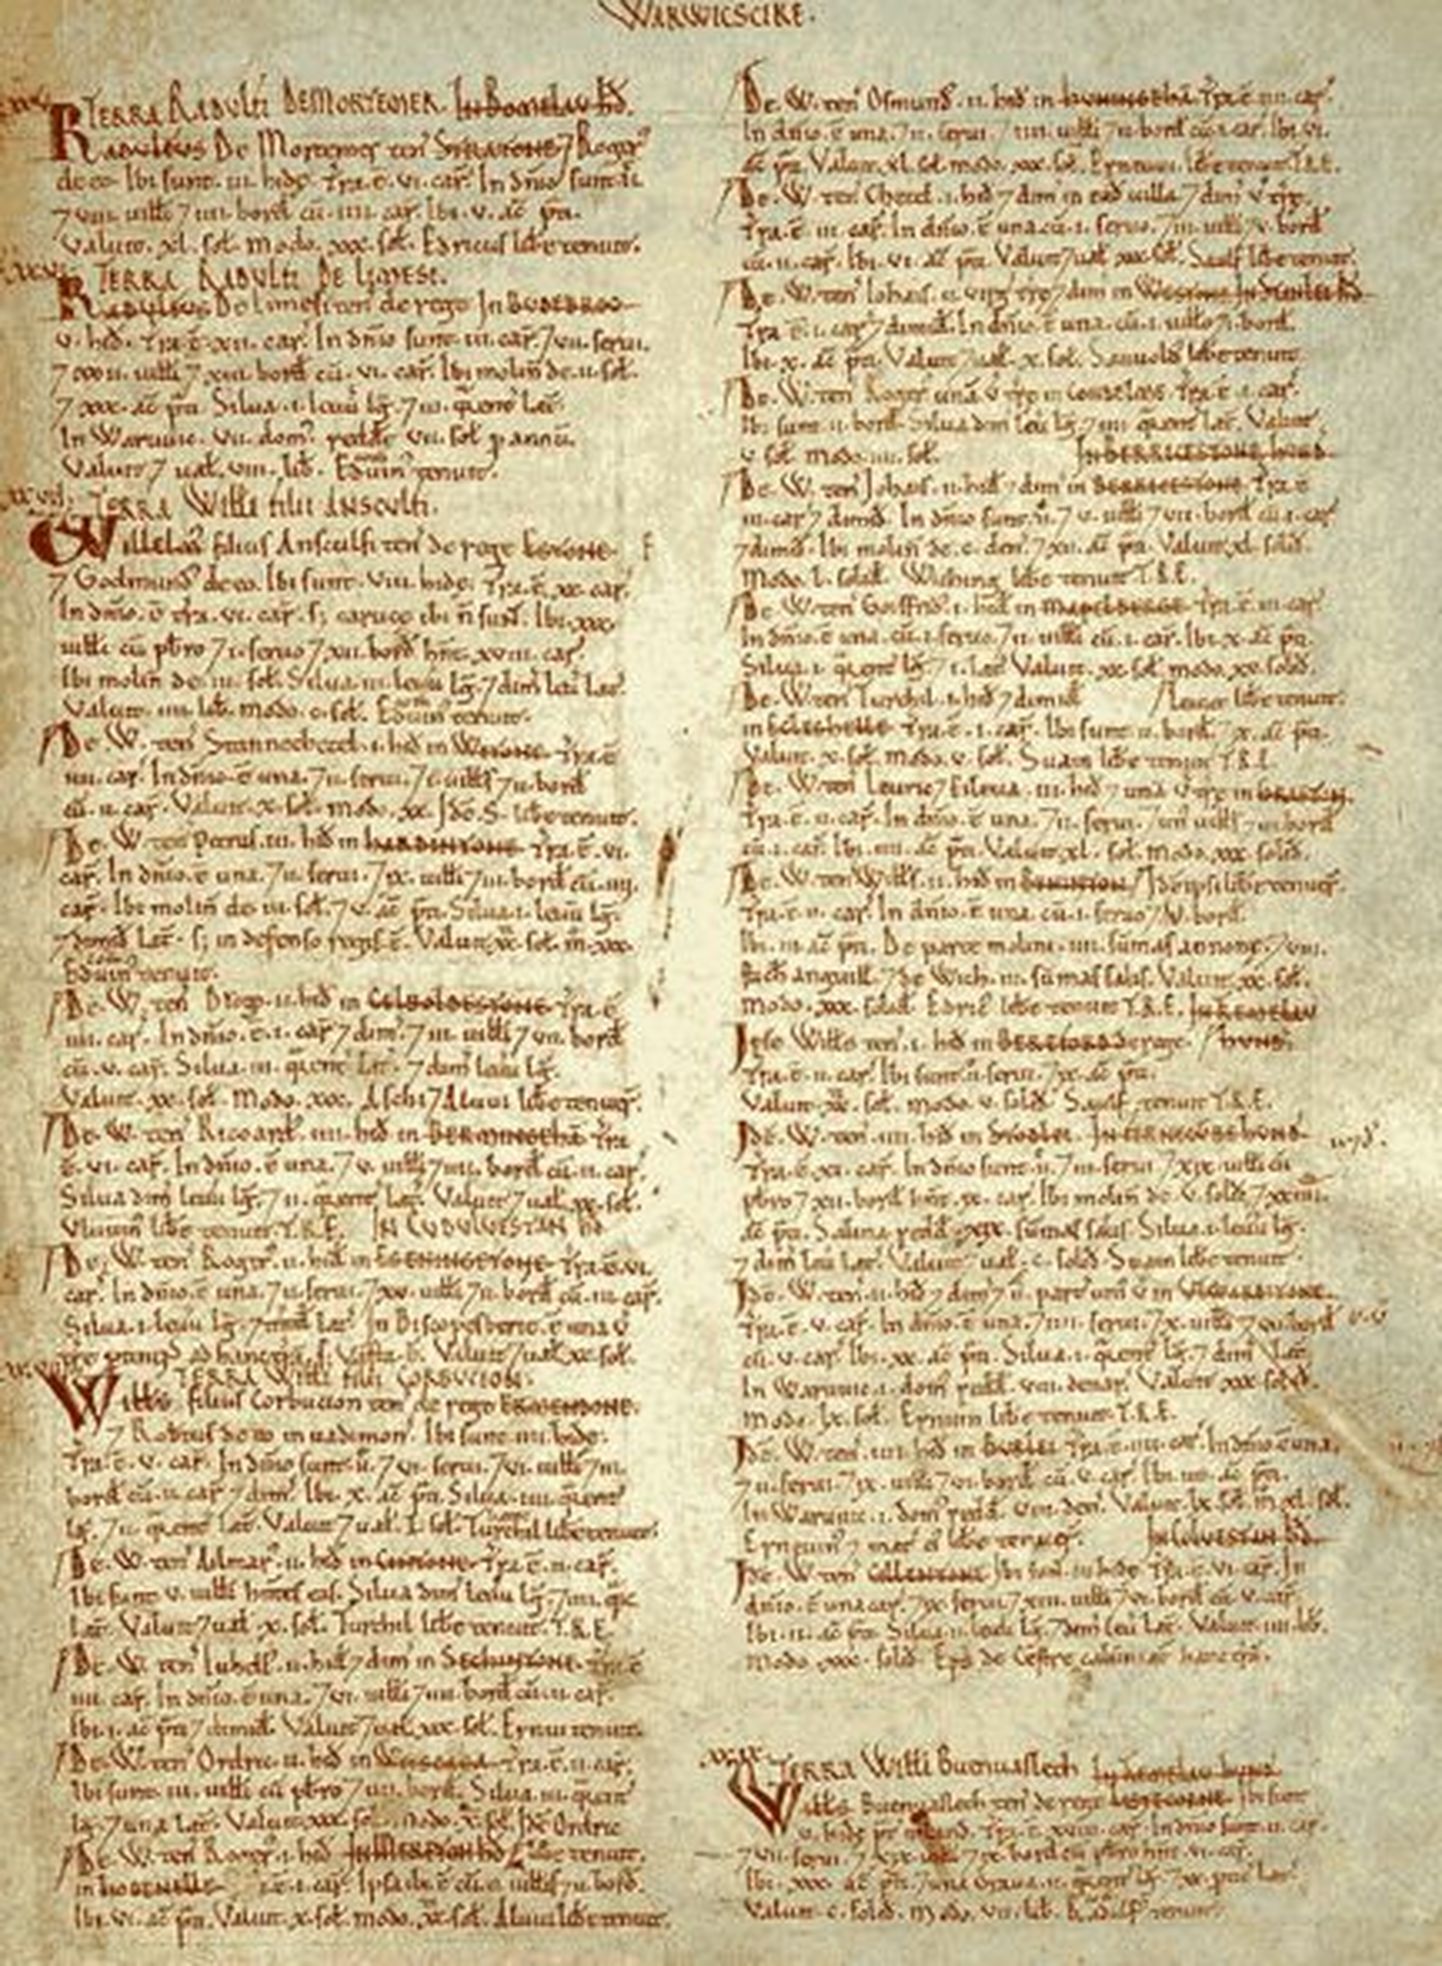 1086. aastal kirja pandud Domesday Book ehk viimsepäevaraamat käsitleb üksikasjalikult tollast eluolu ja maaomandeid